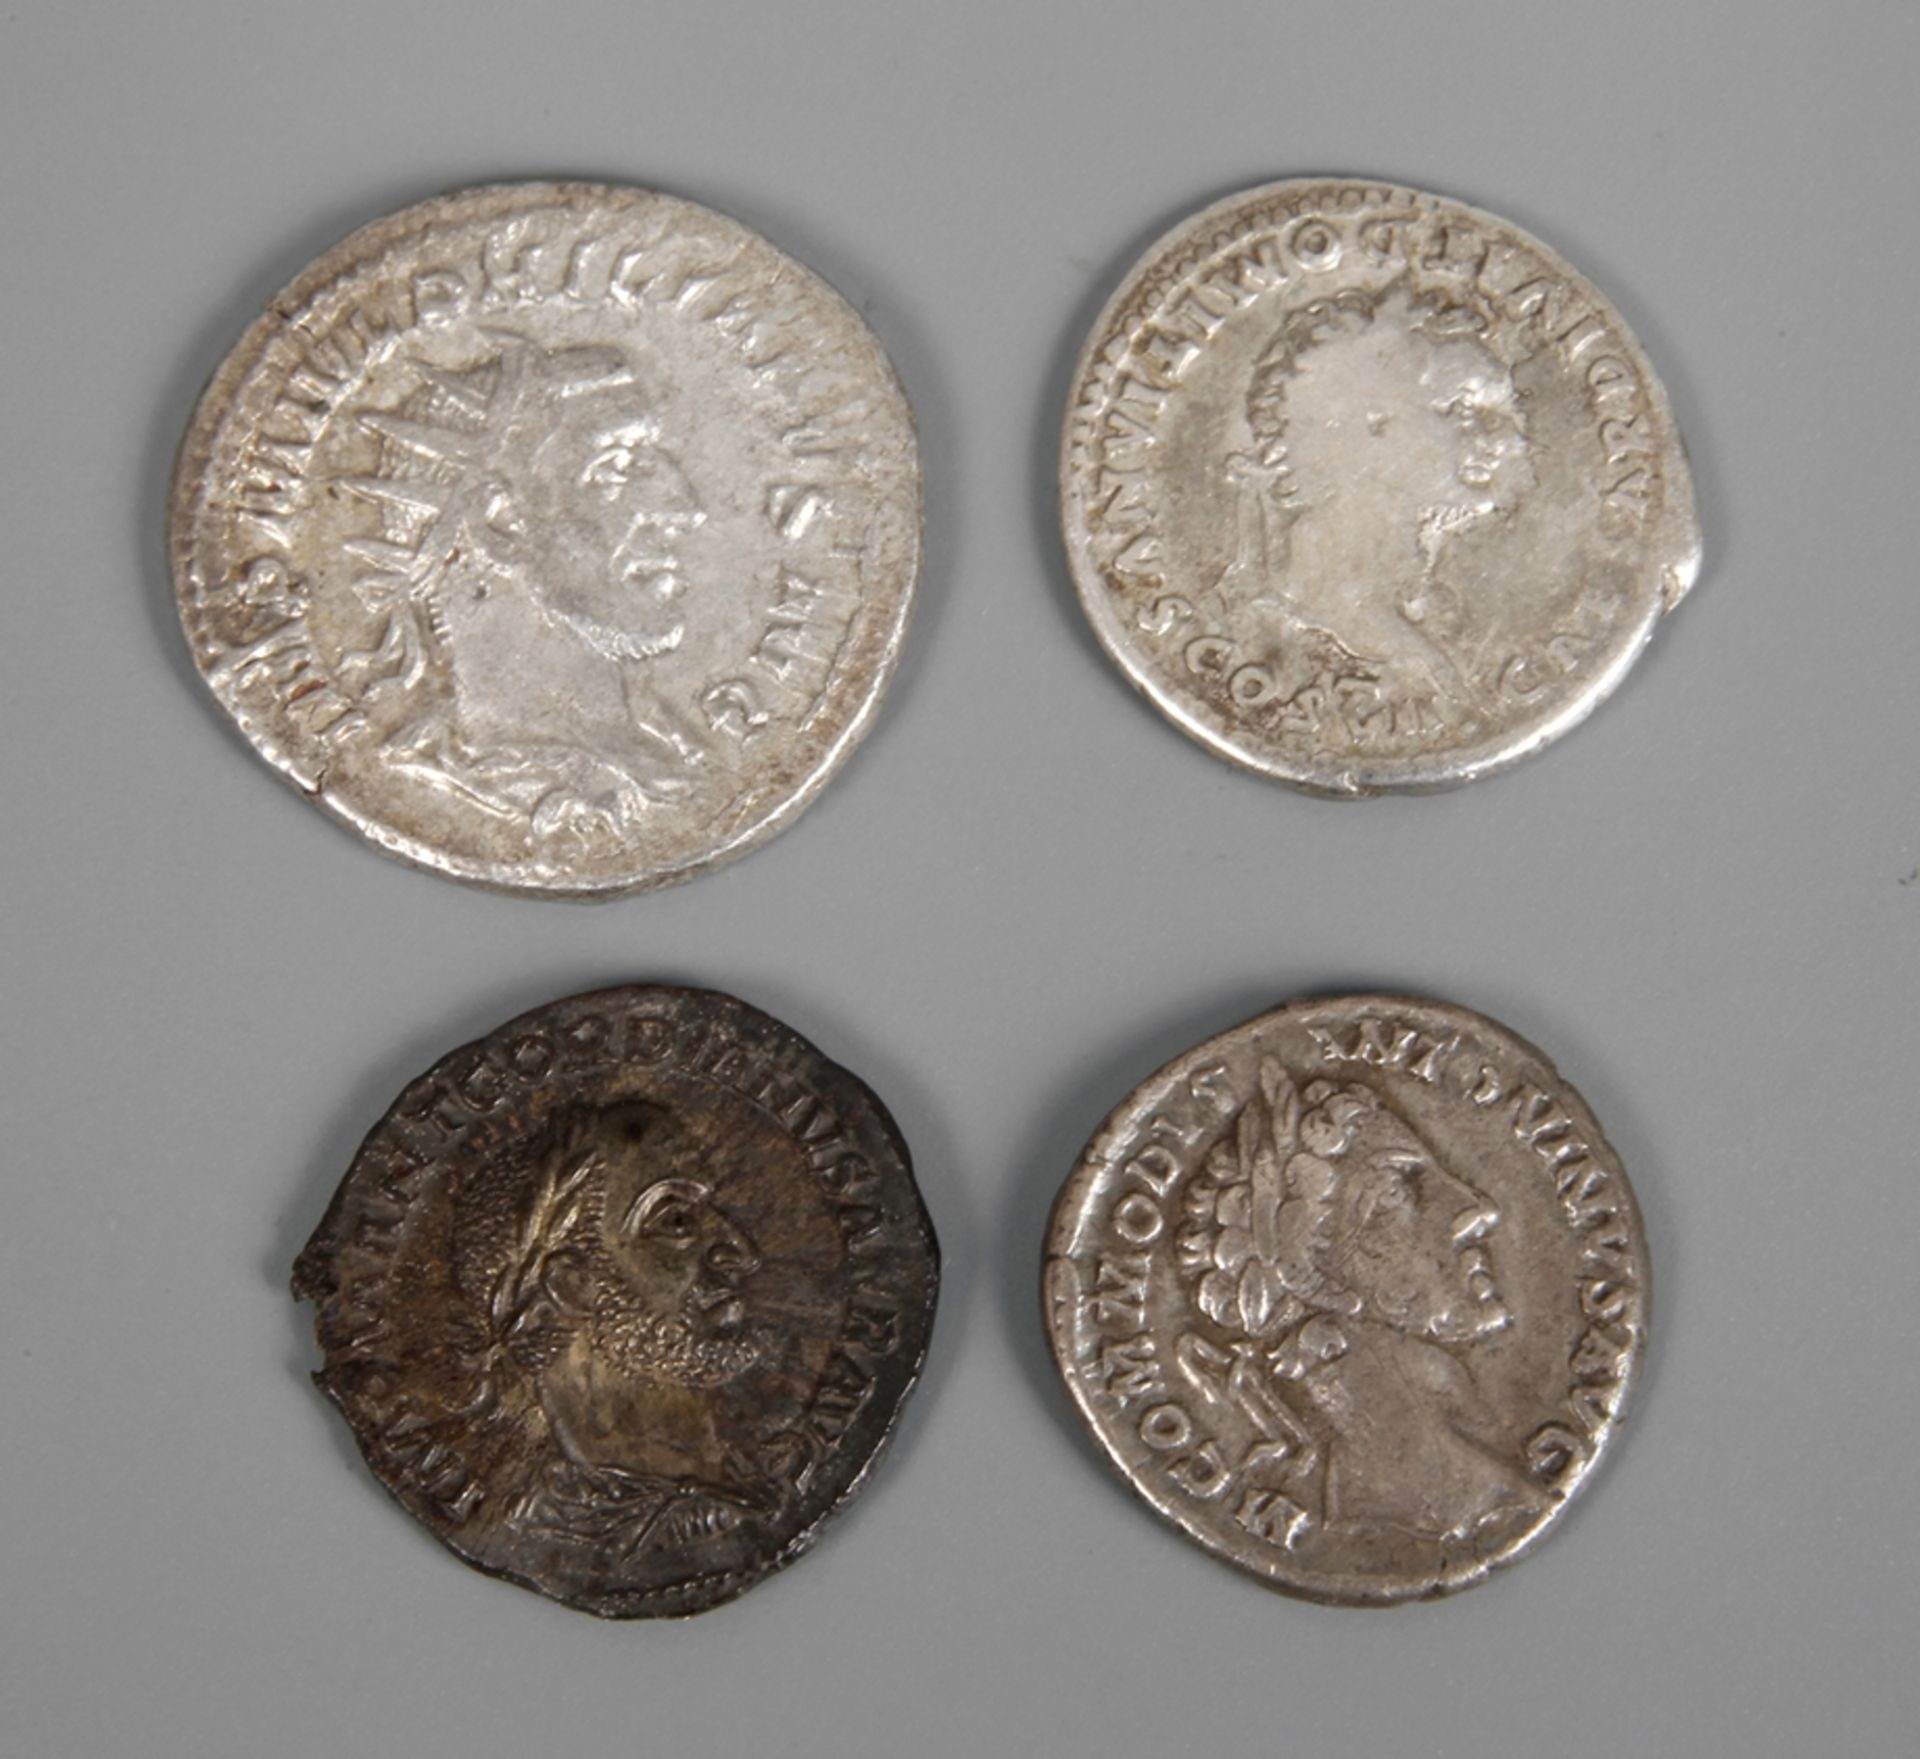 Vier römische MünzenDenar des Domitian/Princeps Iuventutis, ss, G ca. 3,24 g. - Denar des Commodus/